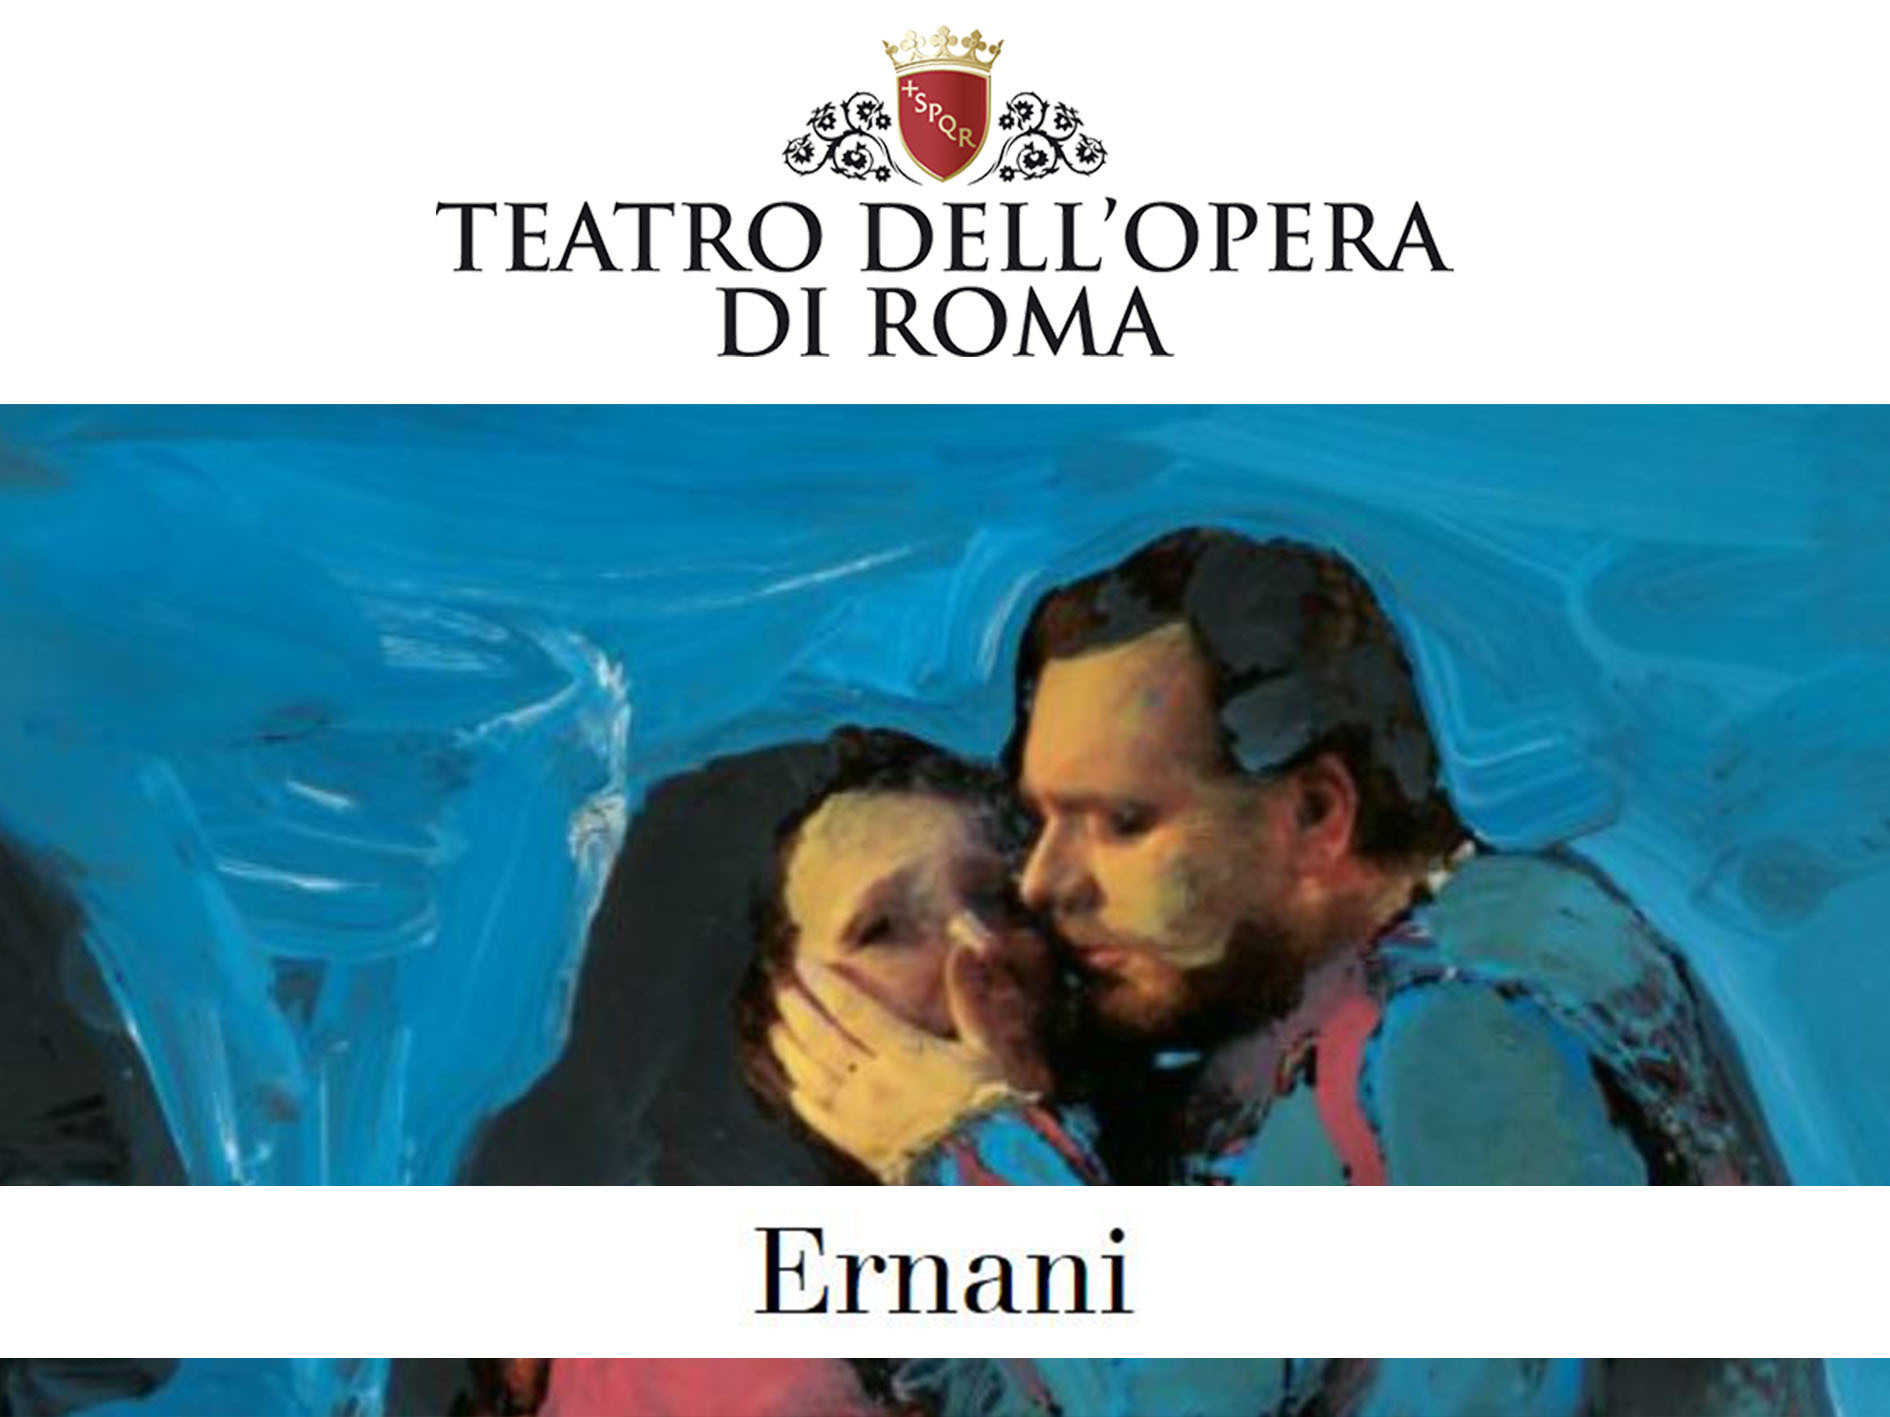 Ernani Teatro Dellopera Di Roma 2022 Production Roma Italy